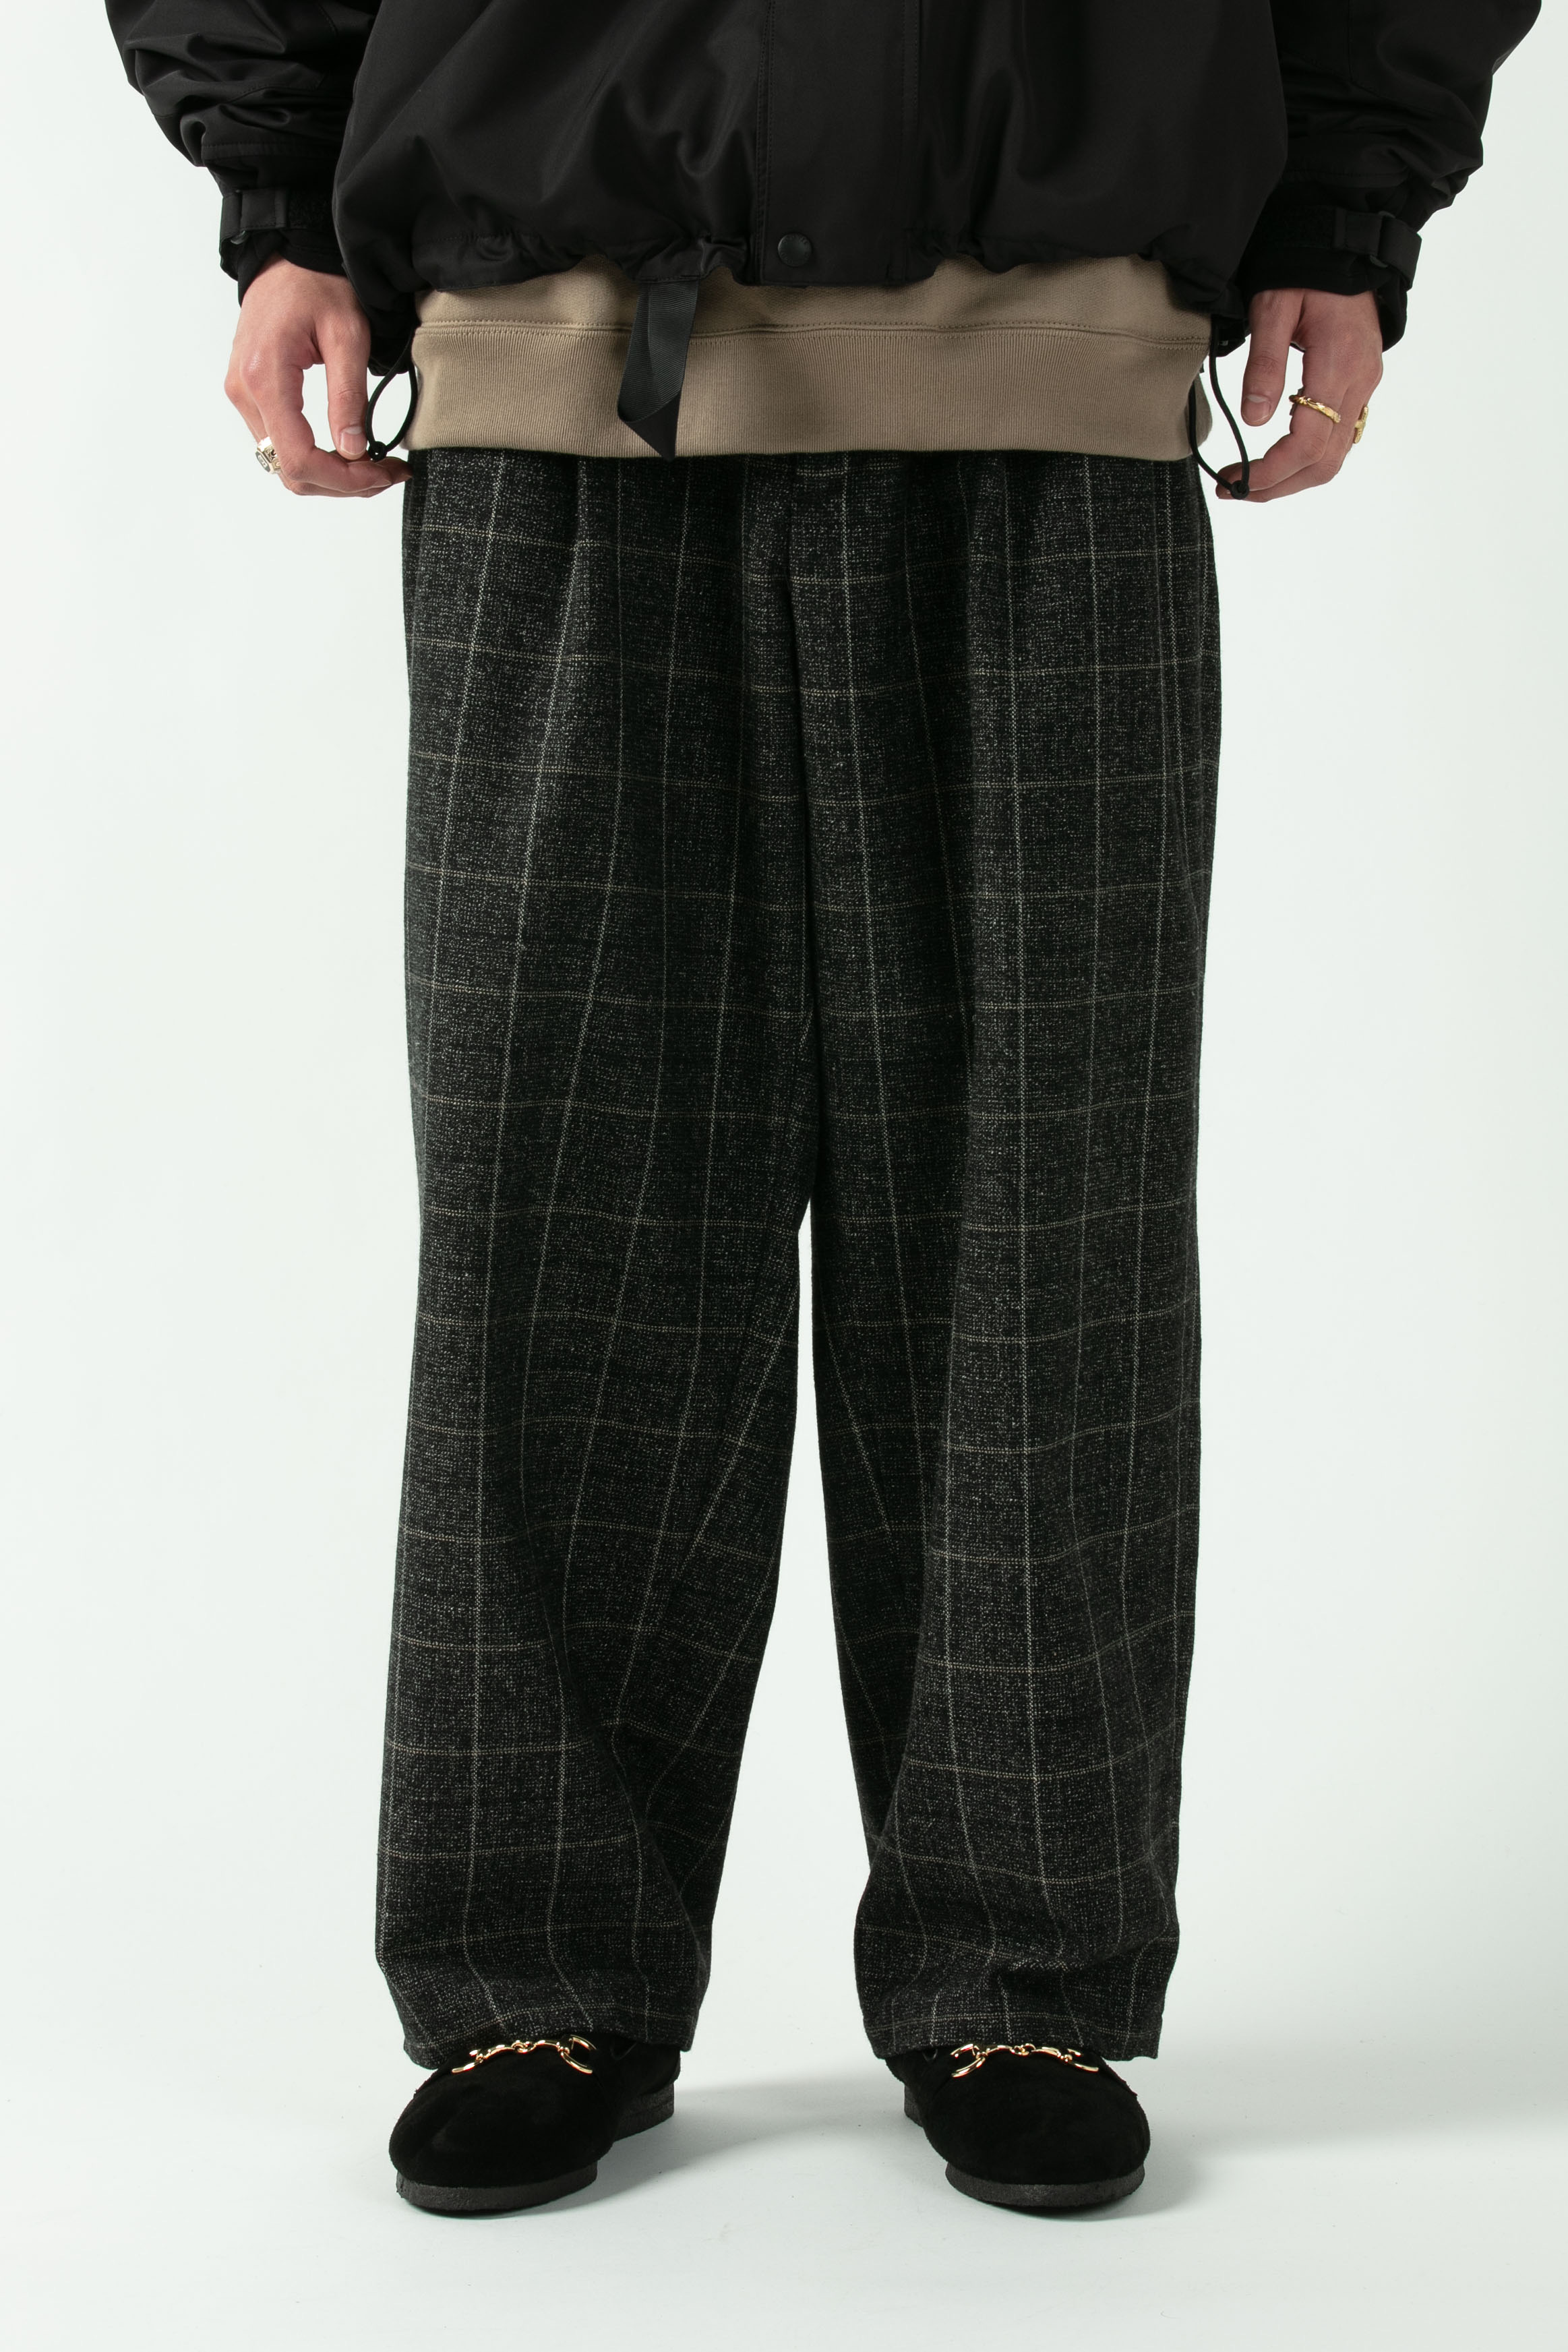 COOTIE / Melange Wool 2 Tuck Trousers -Melange Plaid- | 80-HACHIMARU-